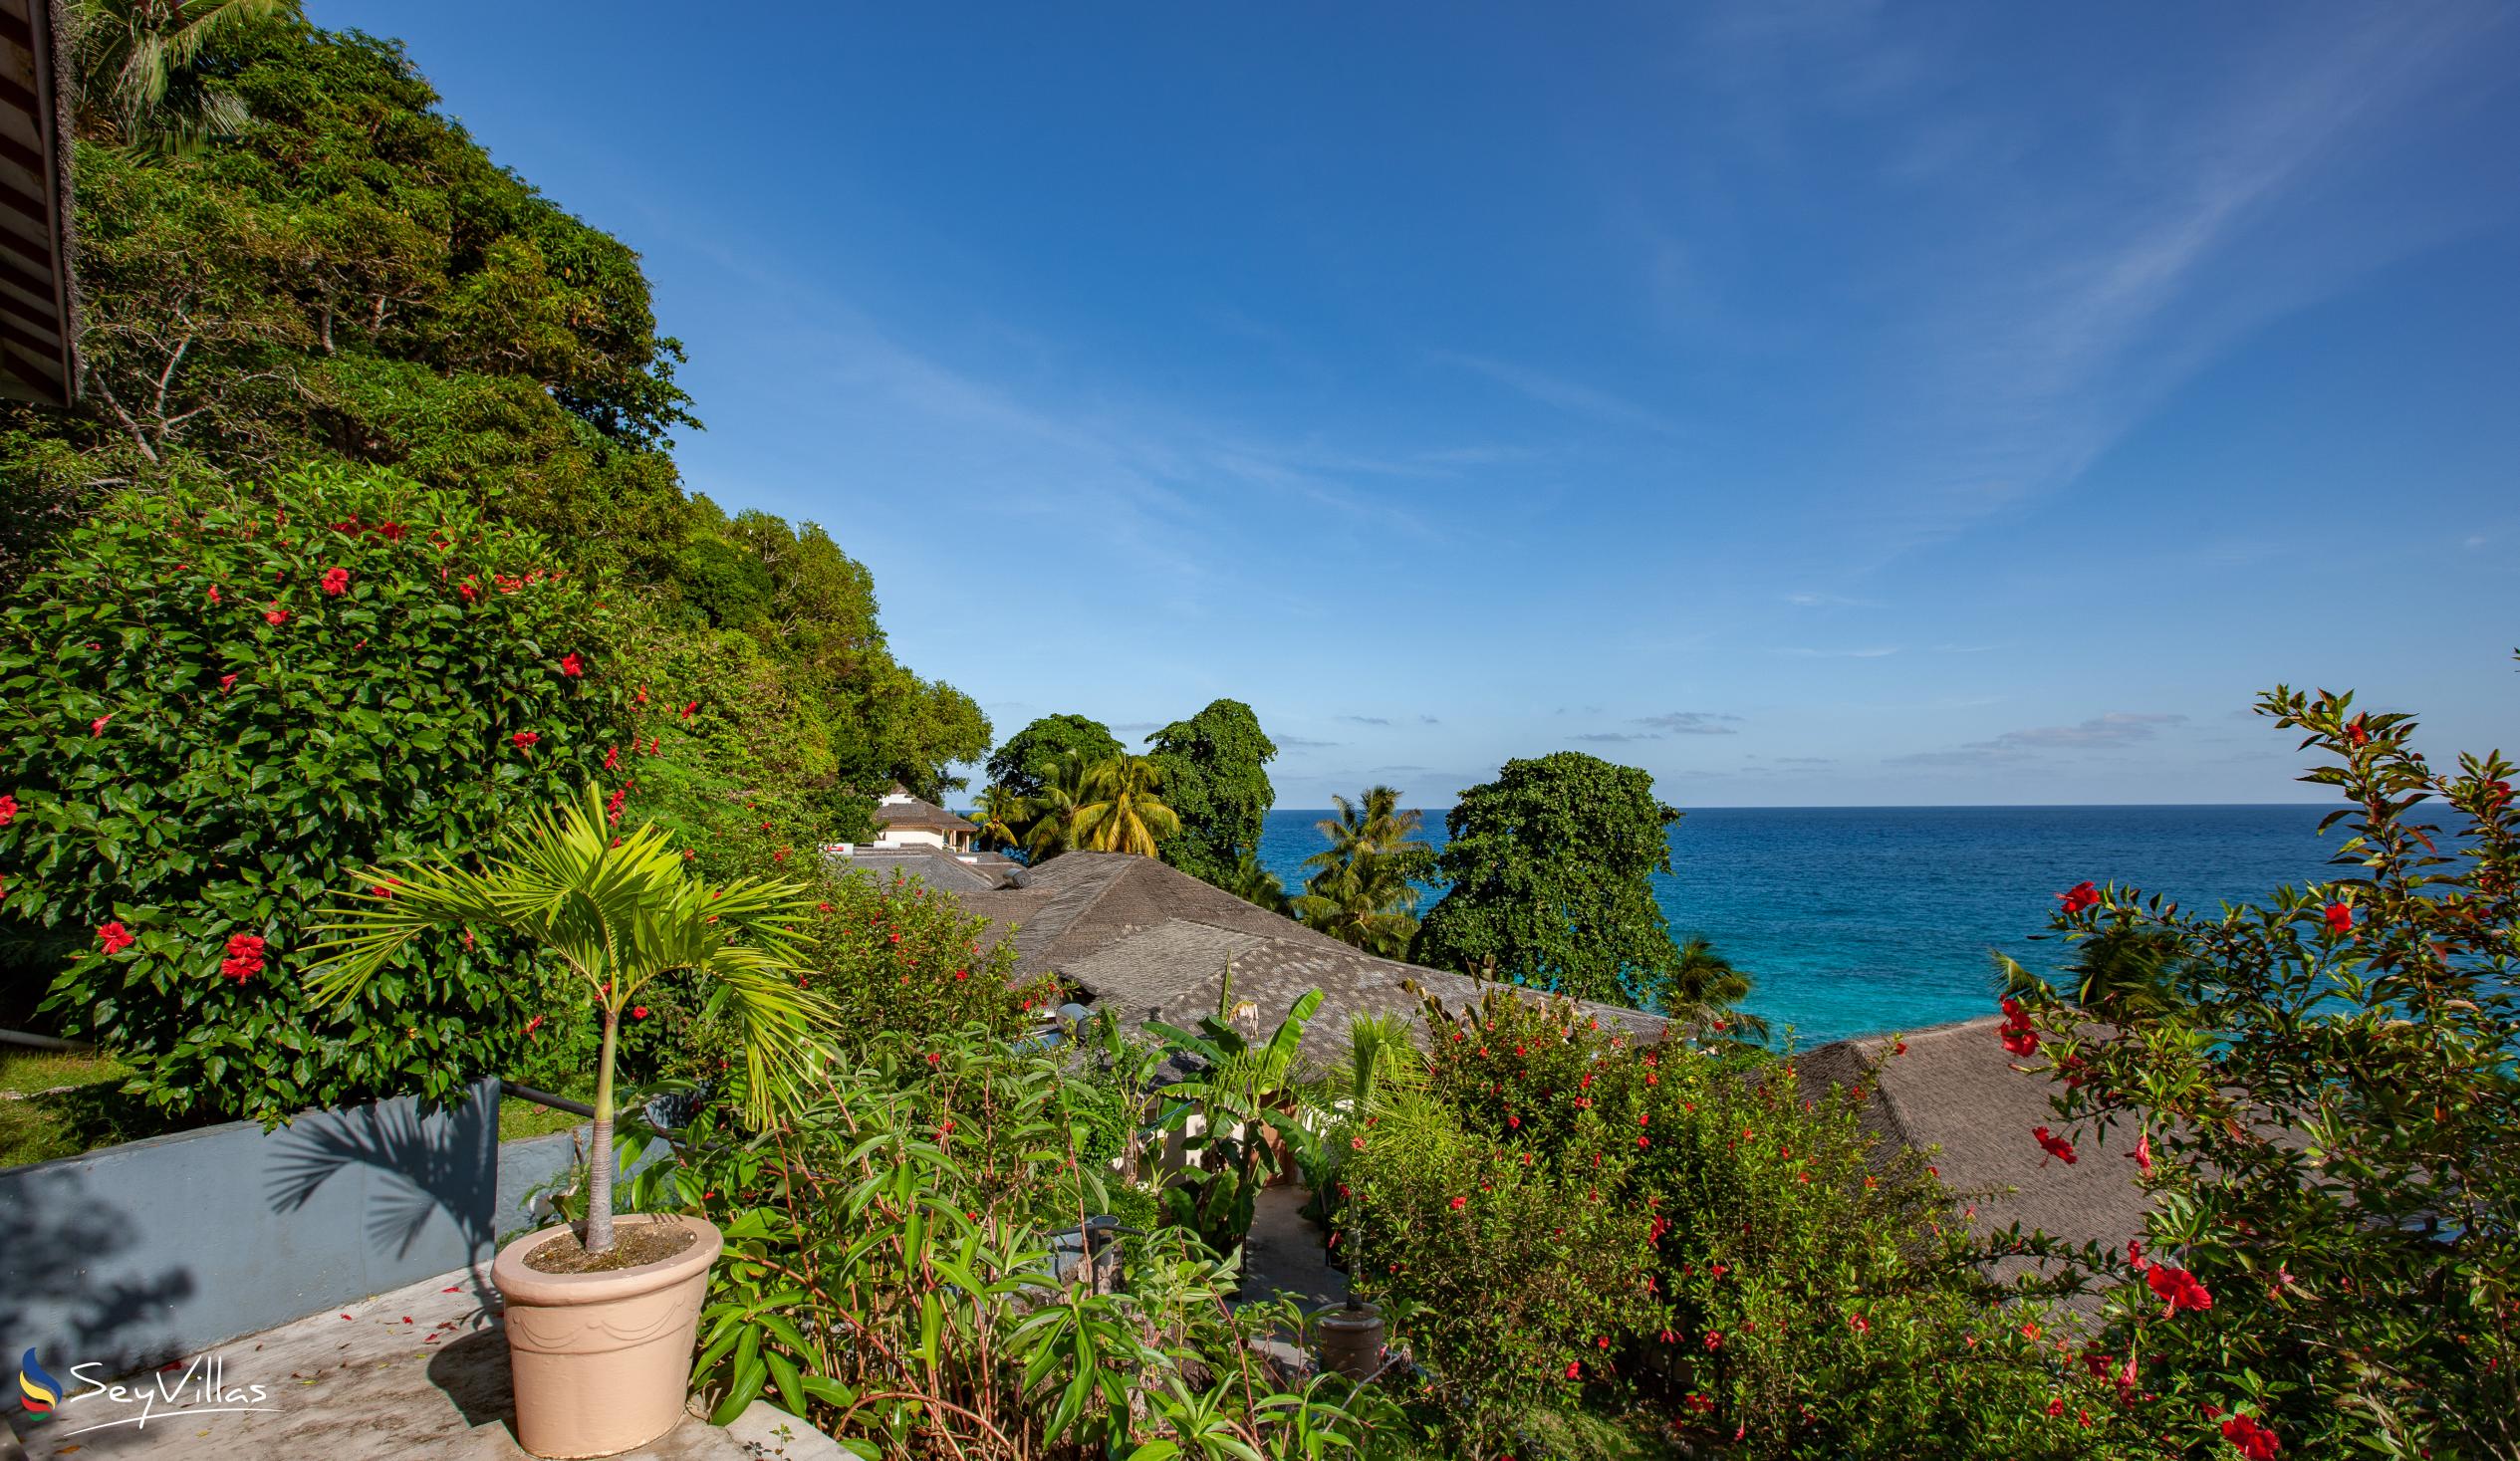 Photo 78: Patatran Village Hotel - Outdoor area - La Digue (Seychelles)